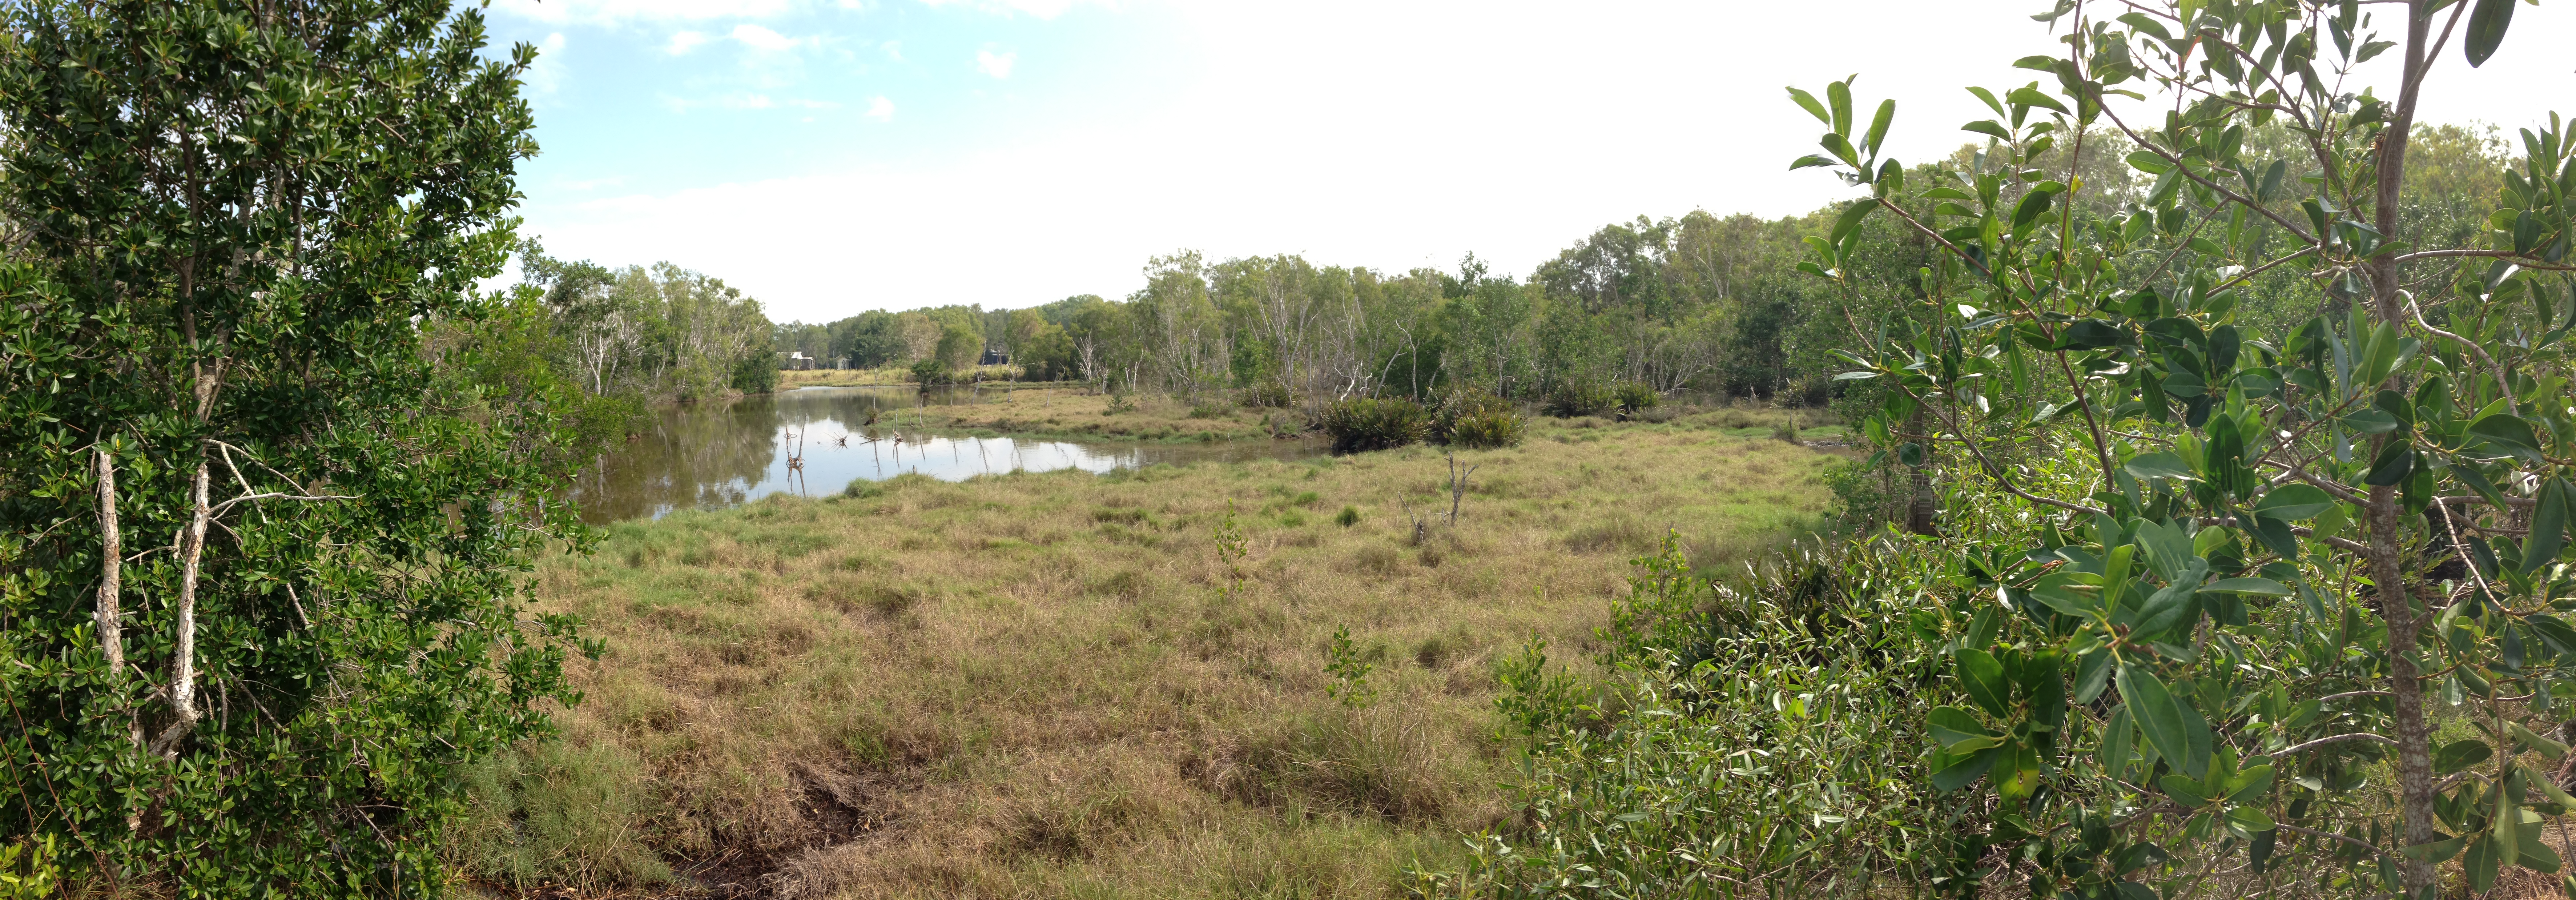 Wetland in Central Queensland.